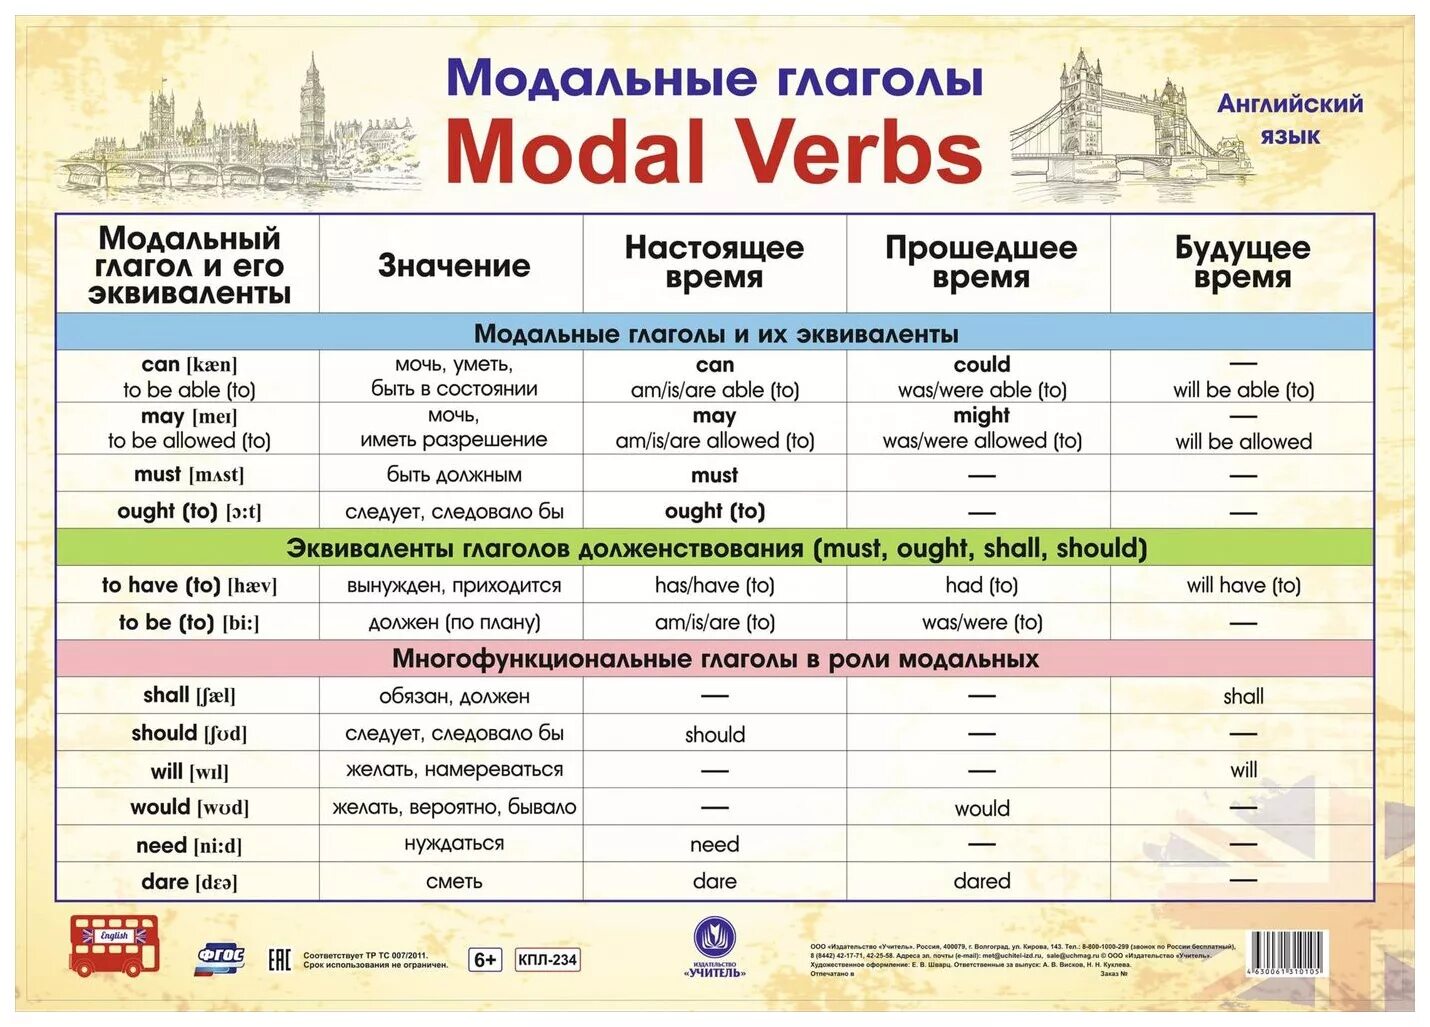 Модальные глаголы в английском языке таблица. Модальные глаголы англ яз таблица. Модальные гляголы в анг. Можальные гдаголы втанглийсуом языке. Сравнение глаголов английского